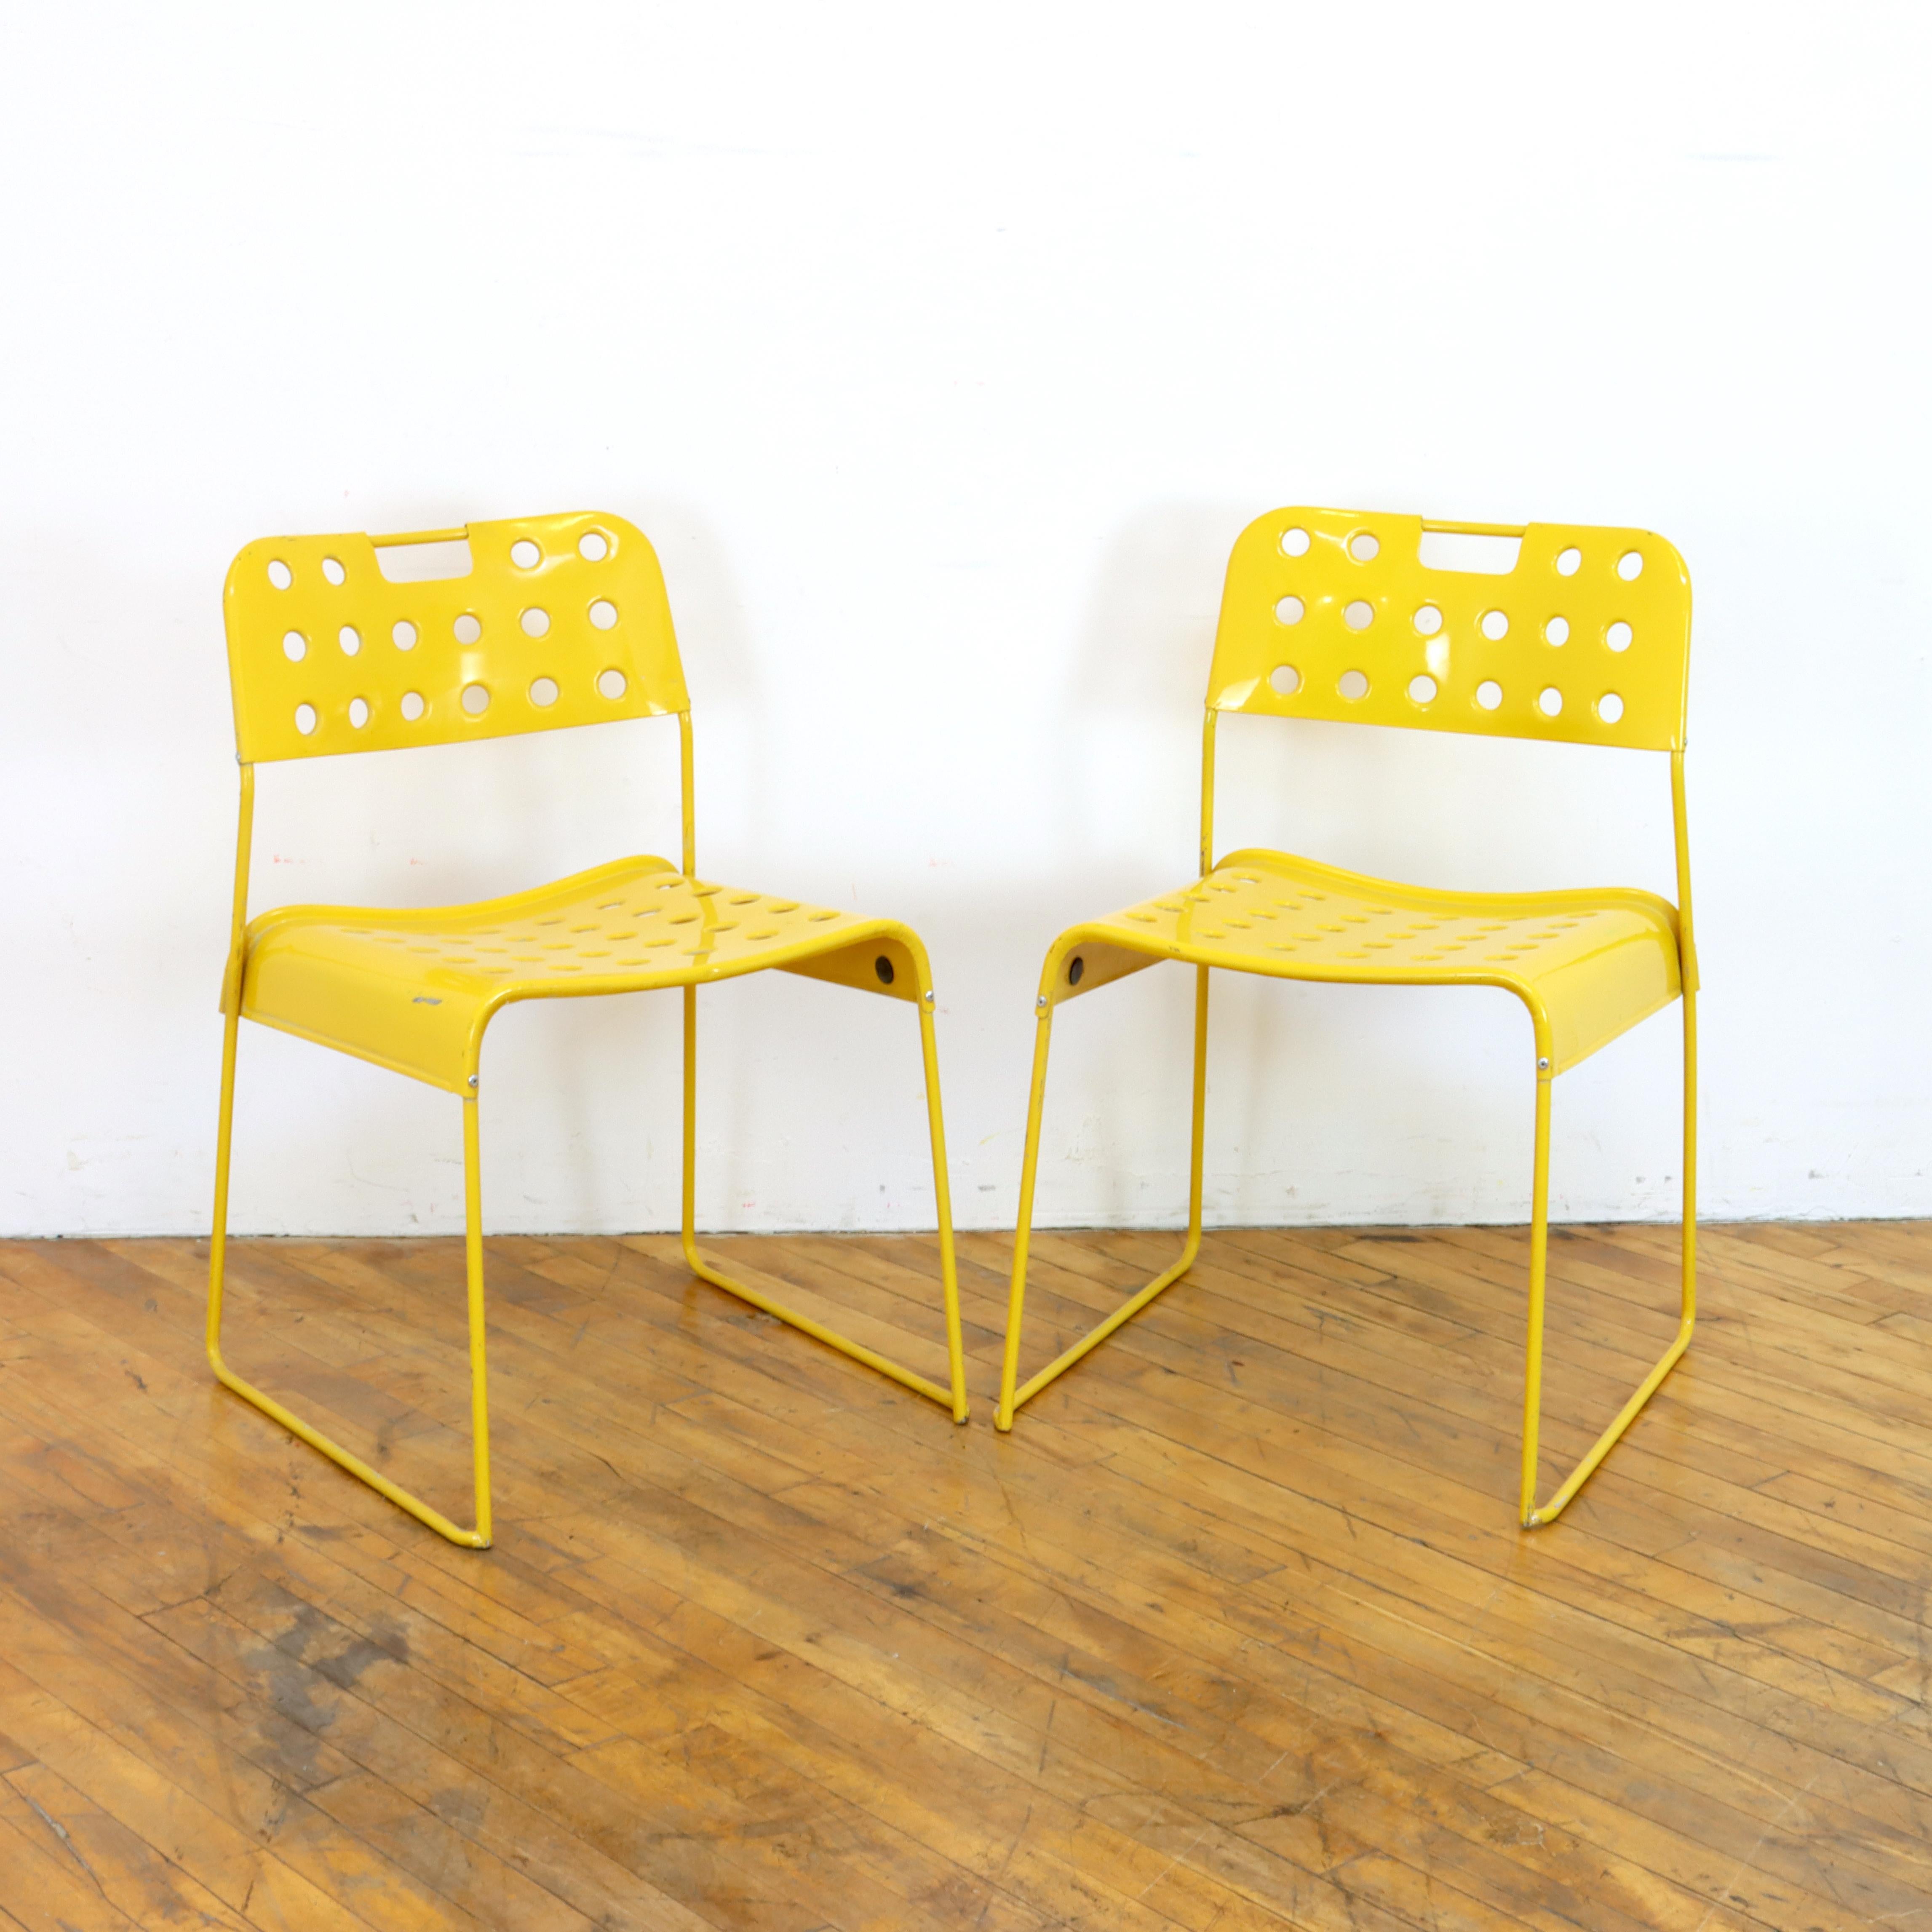 Paire de chaises Omkstak vintage des années 1970 en jaune par Rodney Kingsman pour Bieffeplast. Cadre métallique et perforé 
siège et dossier en métal. Peut être utilisé à l'intérieur ou à l'extérieur.  

18,5